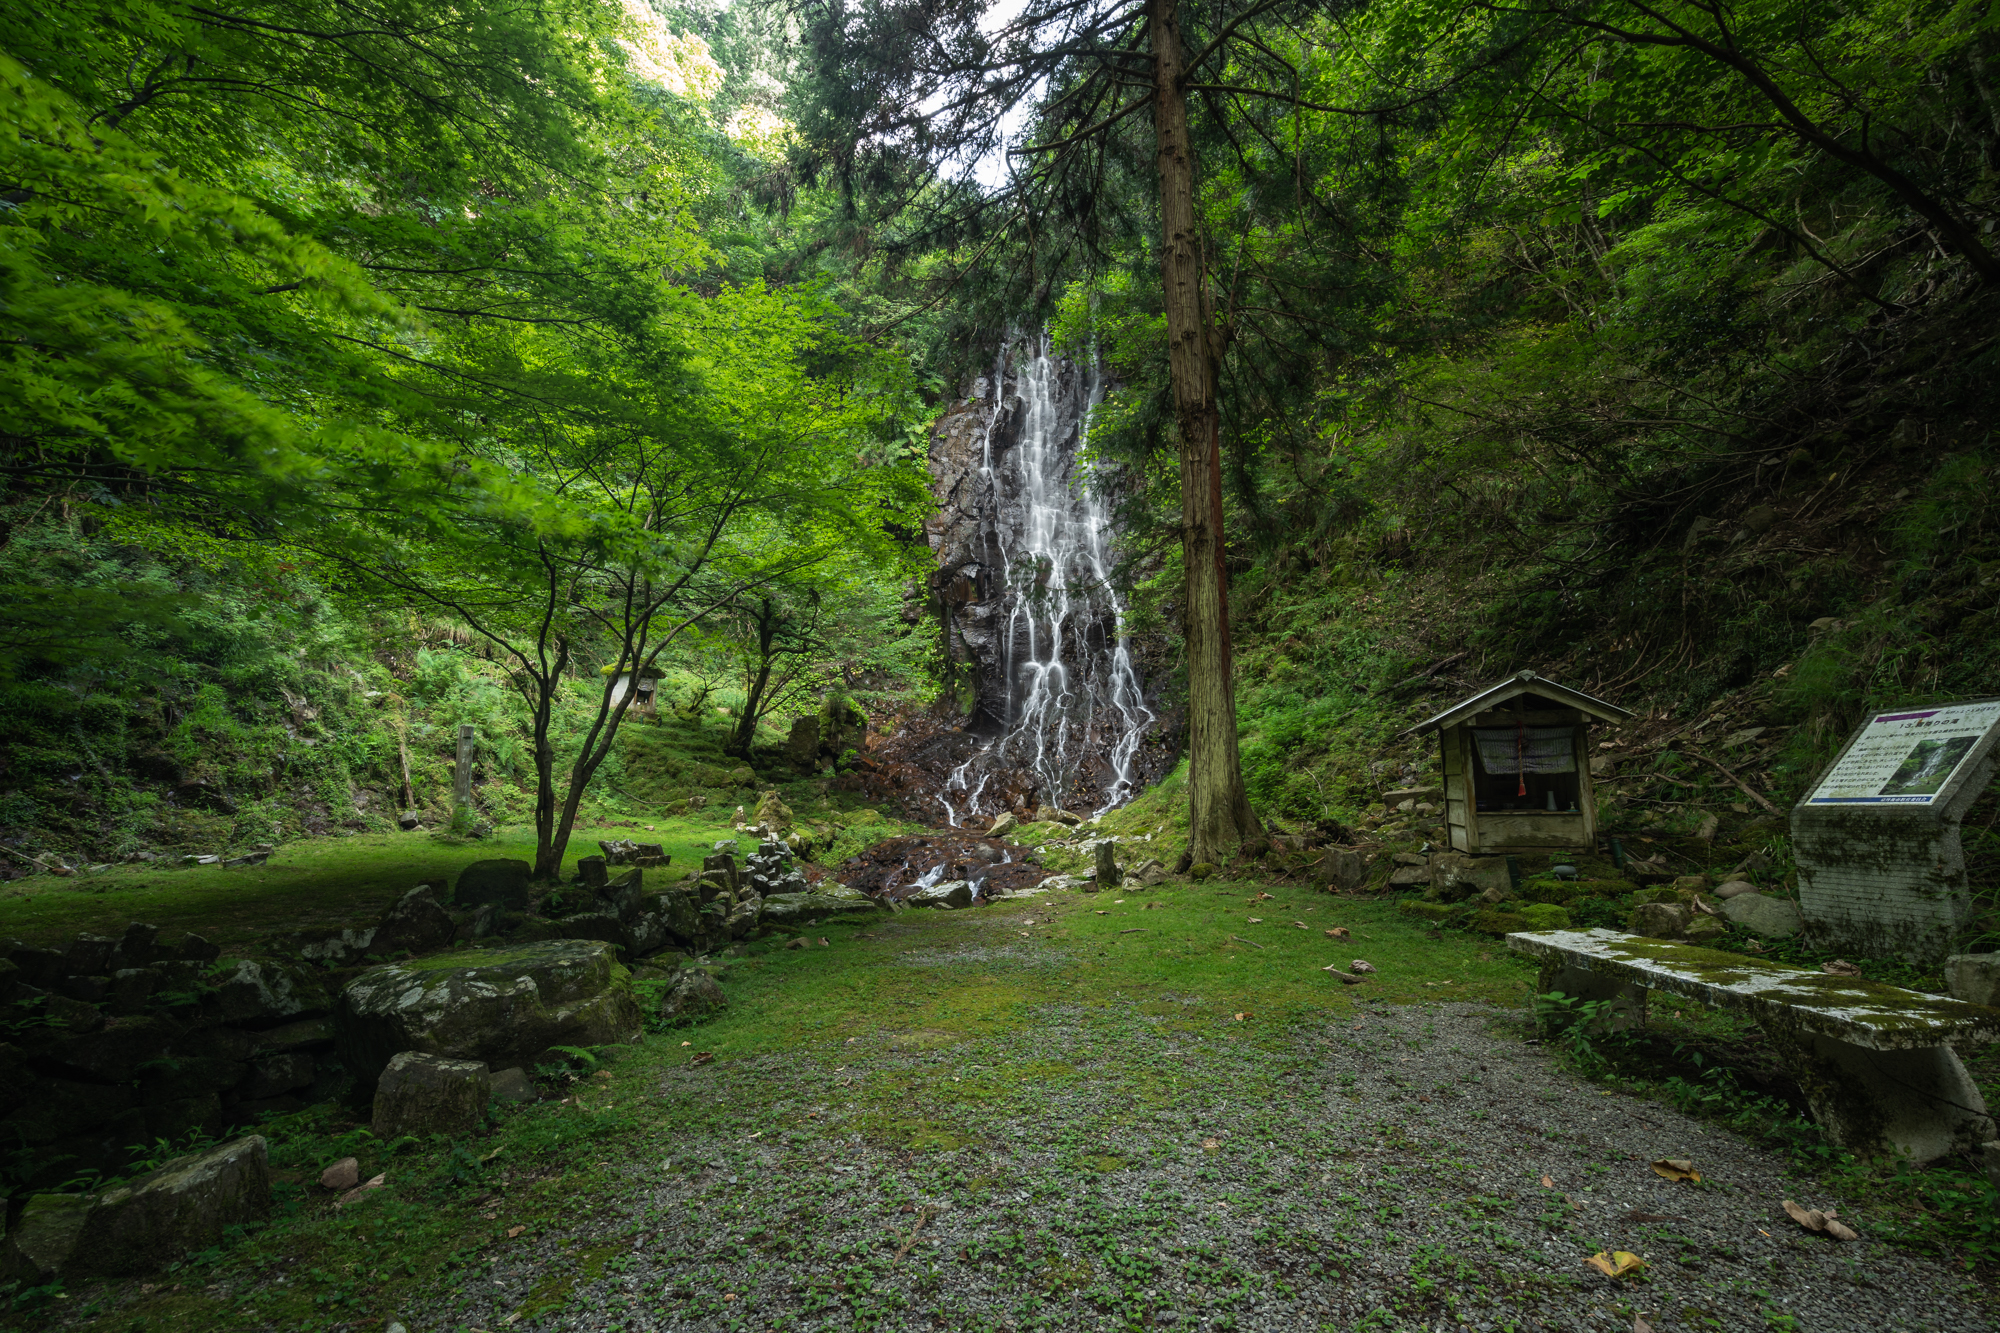 DSC01620 京都府 霧降りの滝( 新緑の滝が美しい初夏におすすめの滝スポット! 写真の紹介、アクセス・駐車場情報やなど!)　